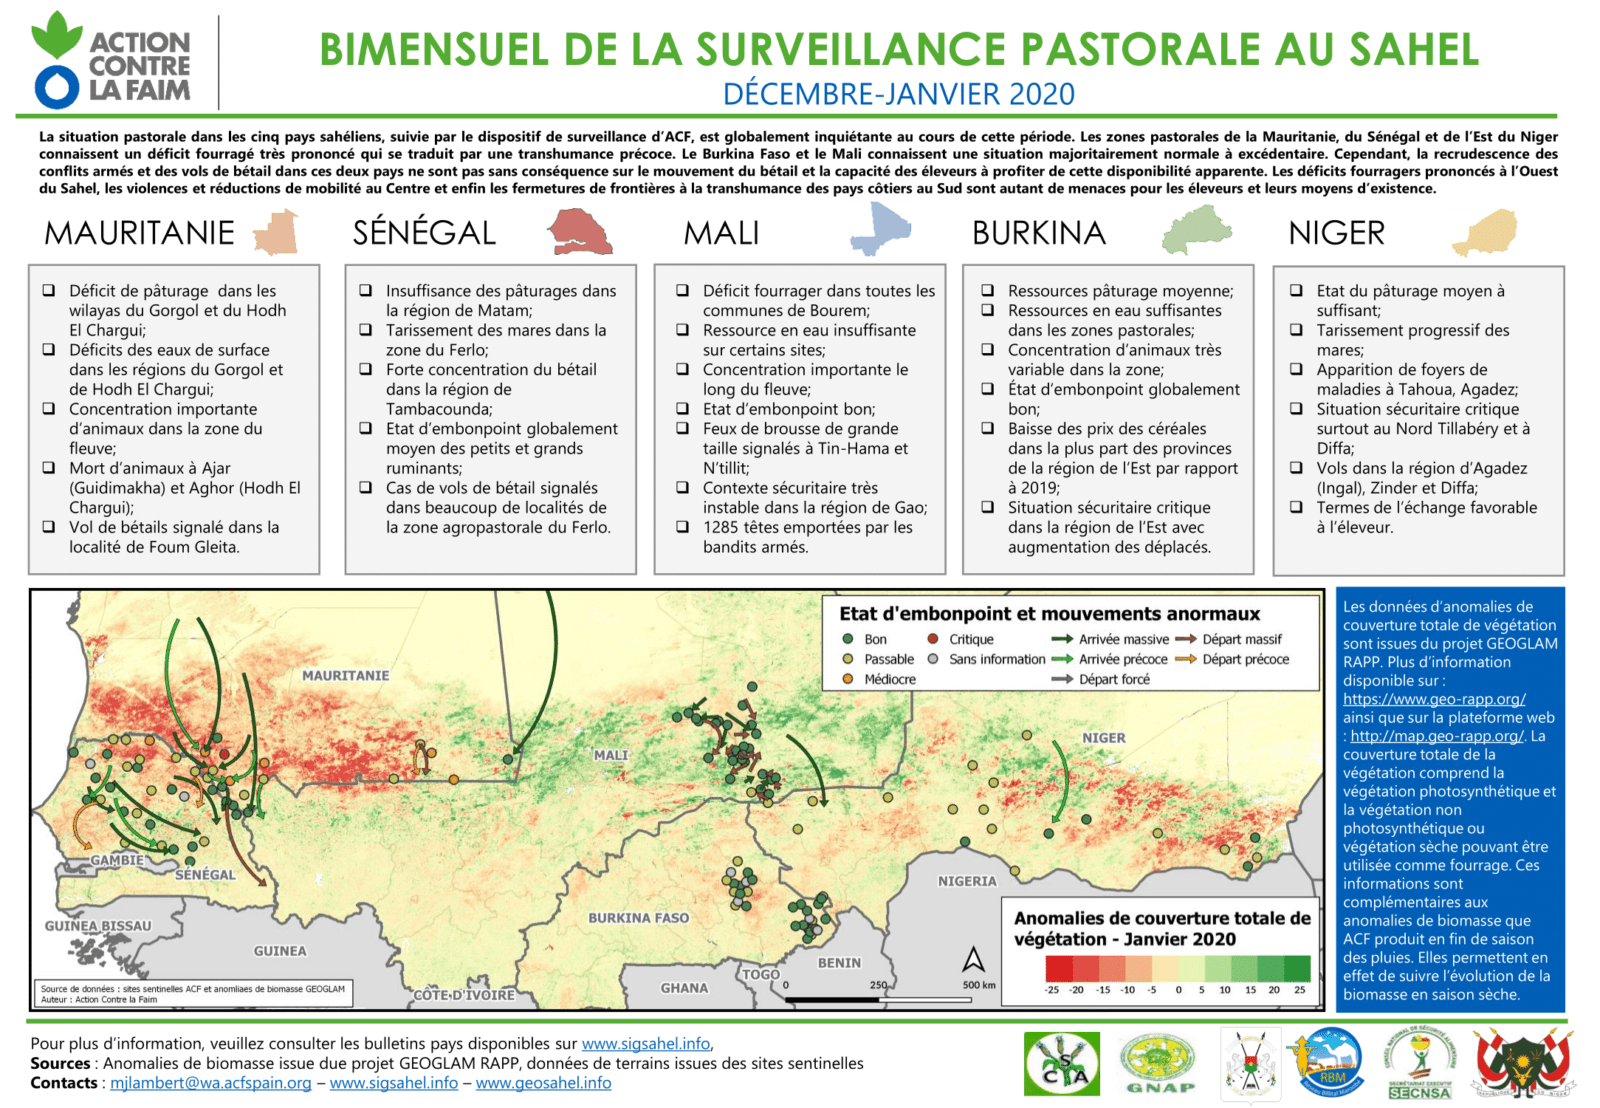 Bimestriel de la surveillance pastorale au Sahel. Décembre-Janvier 2020.